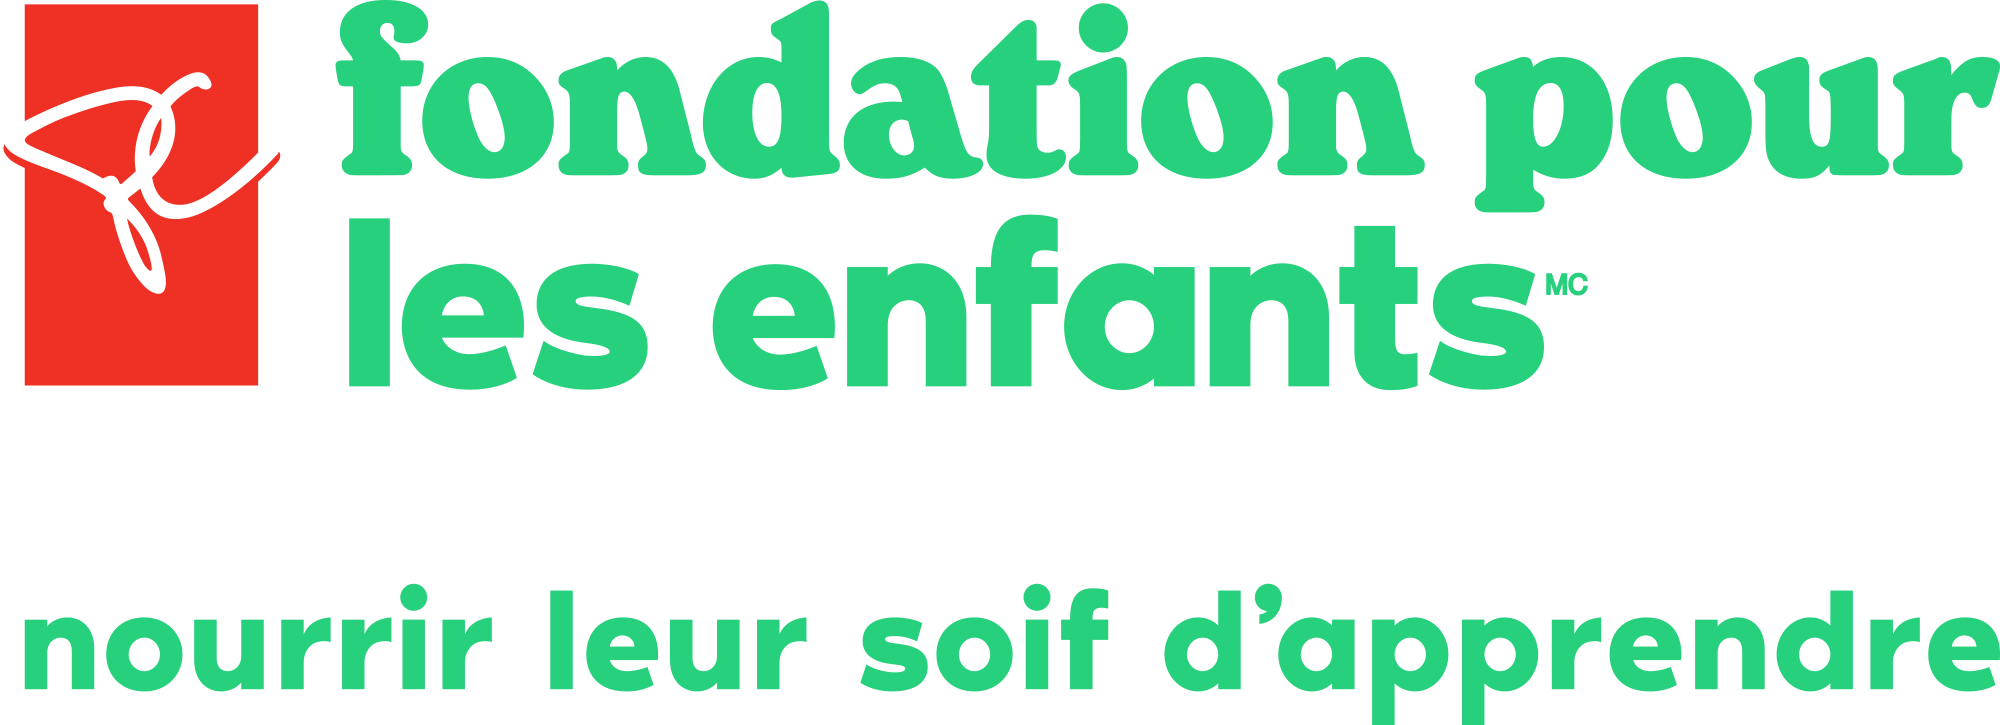 Logo de Fondation Choix du président